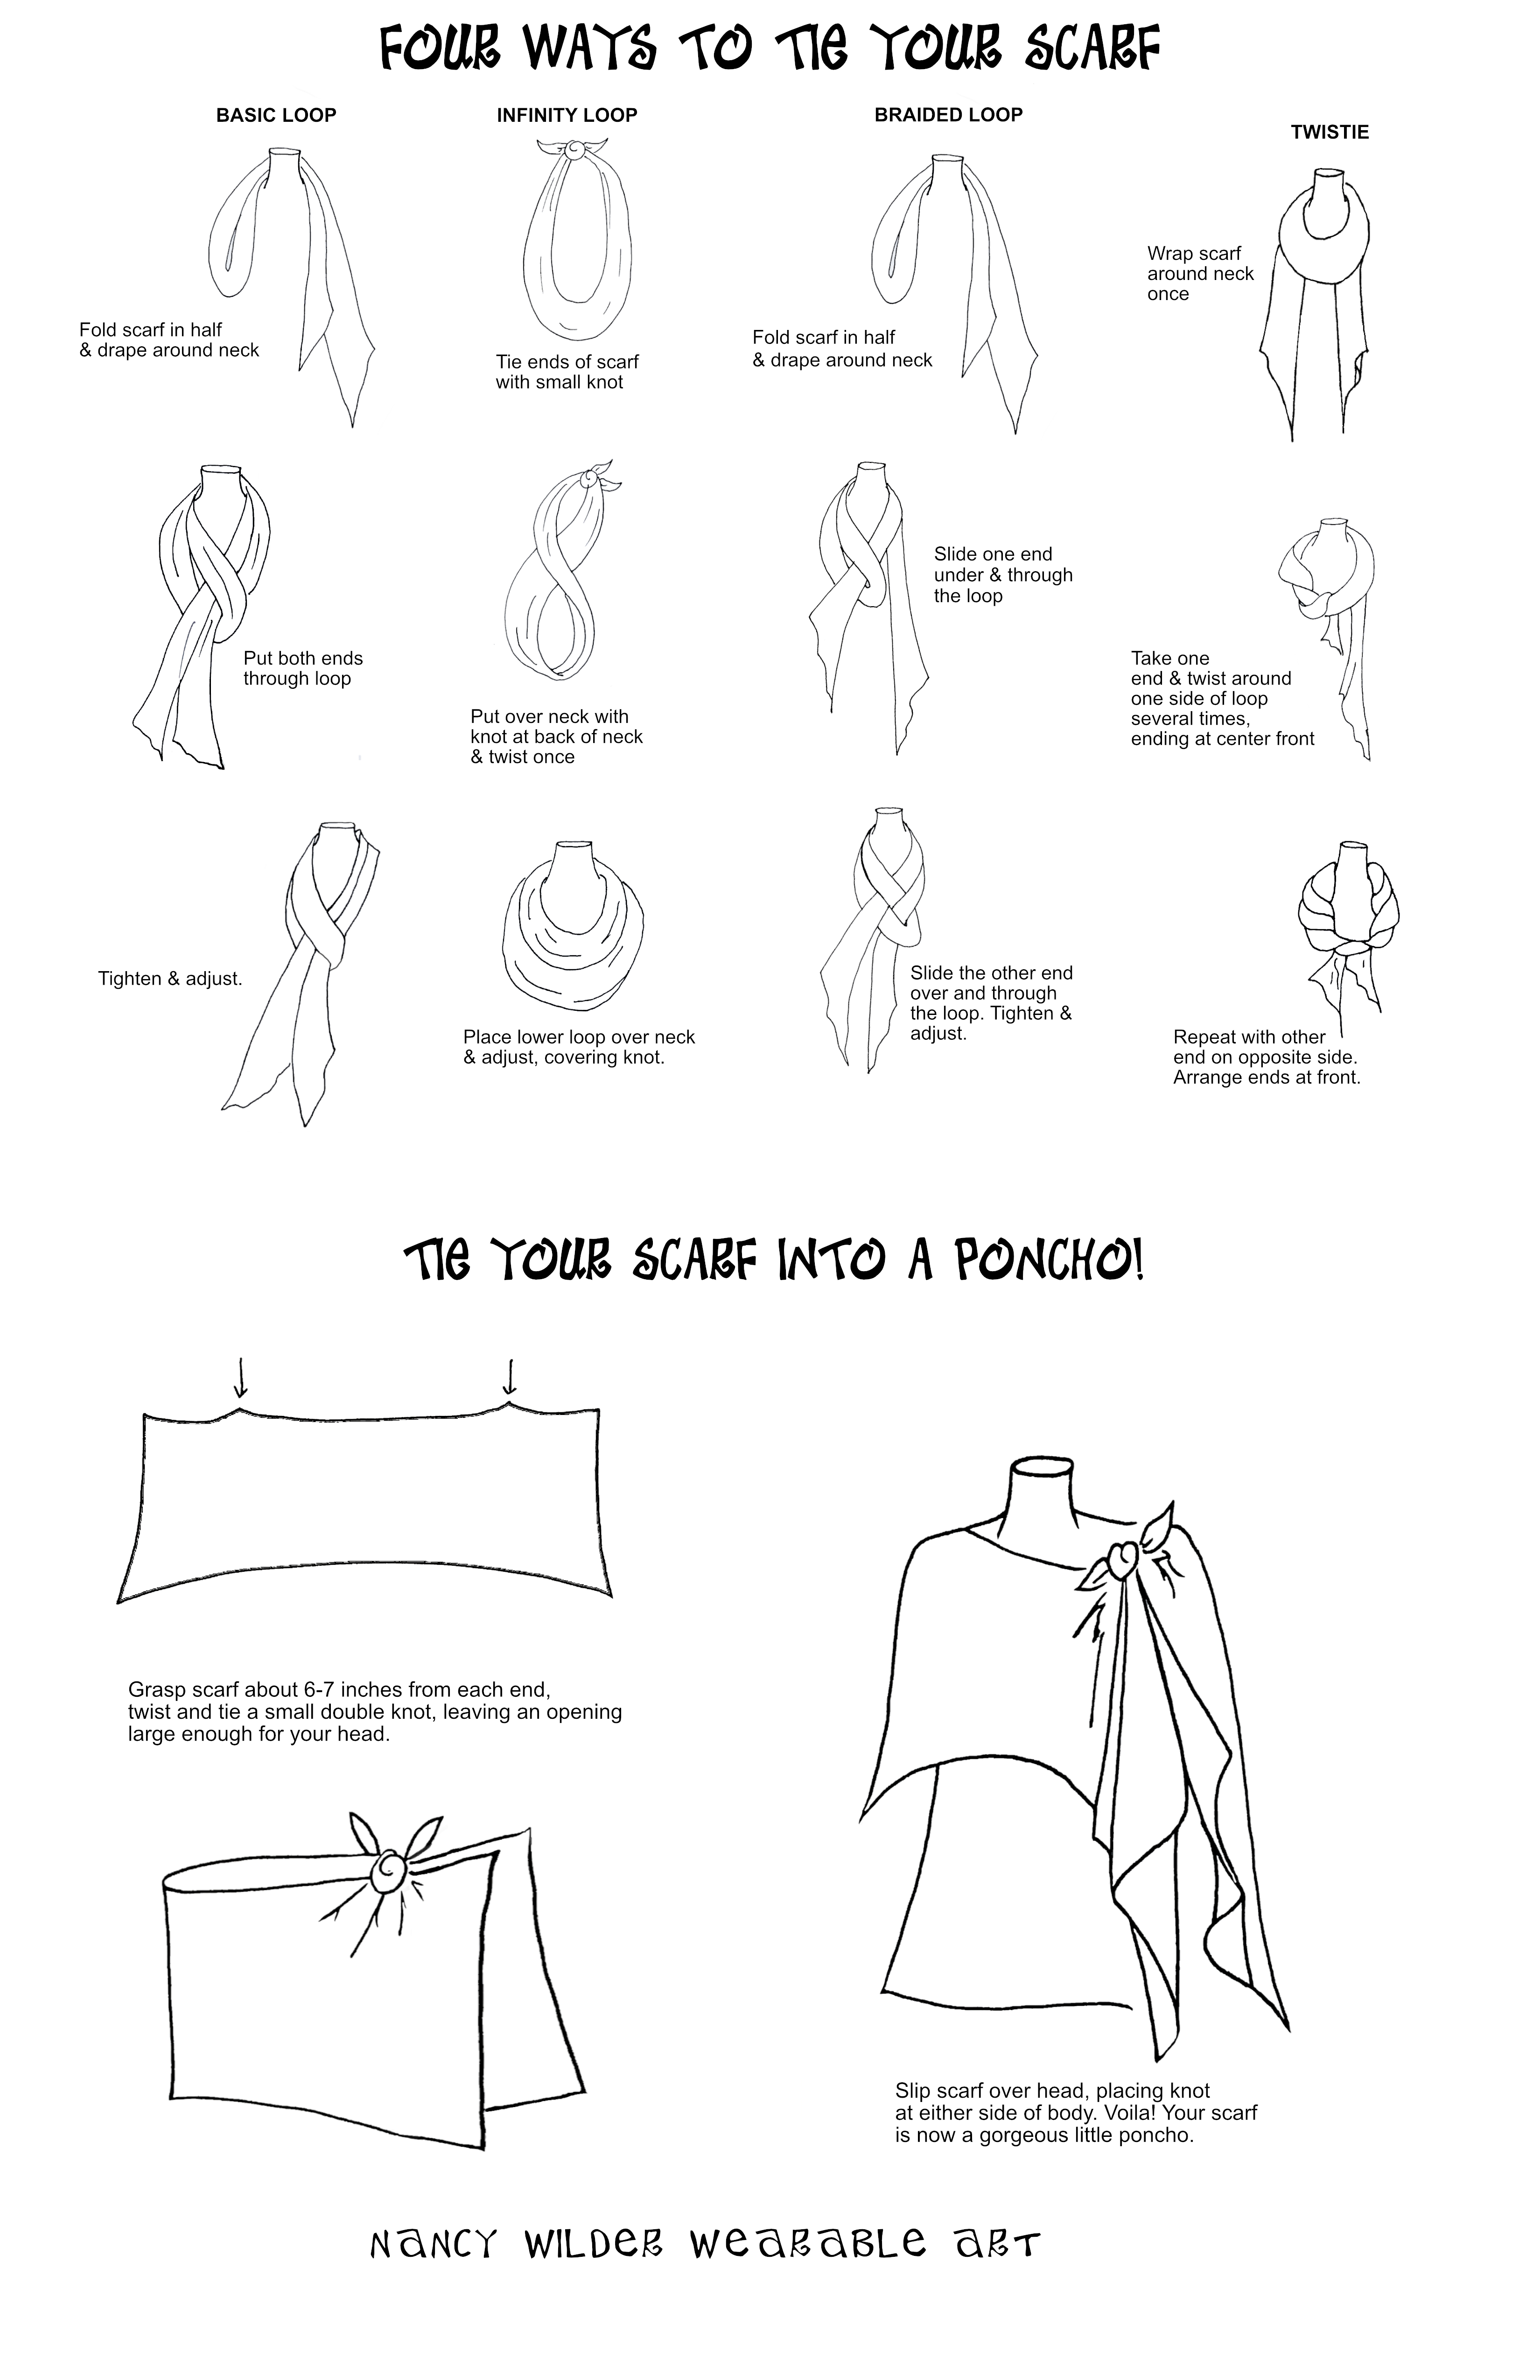 How to tie a scarf!  Nancy Wilder Wearable Art